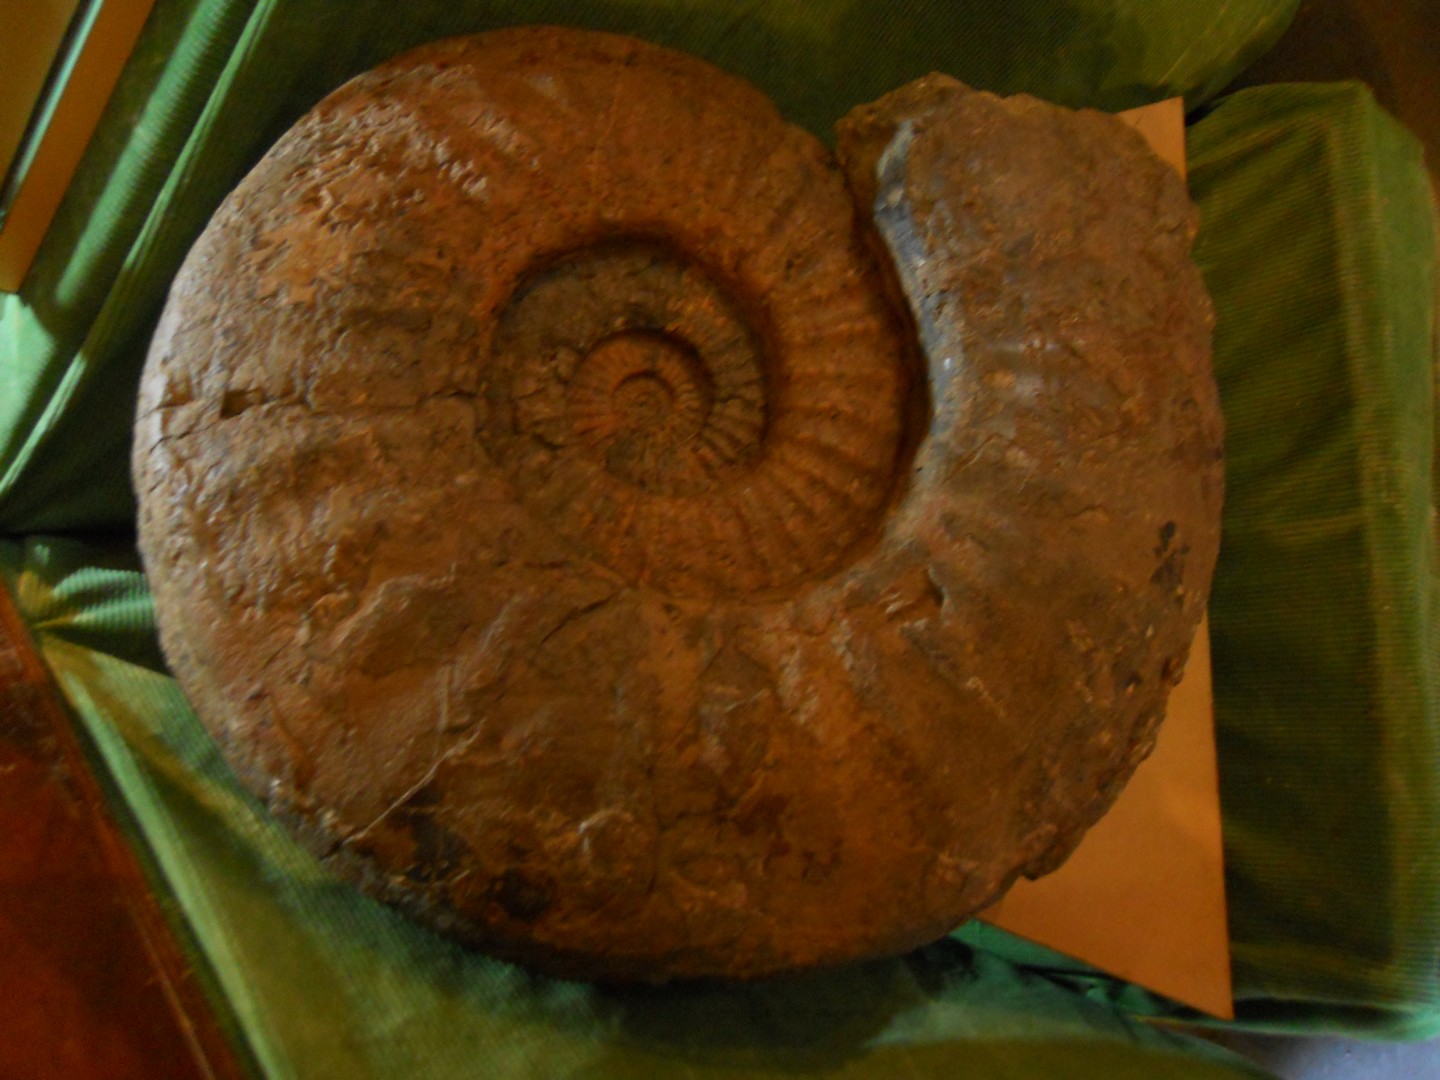 Asterocers du Sinémurien de 60 cm